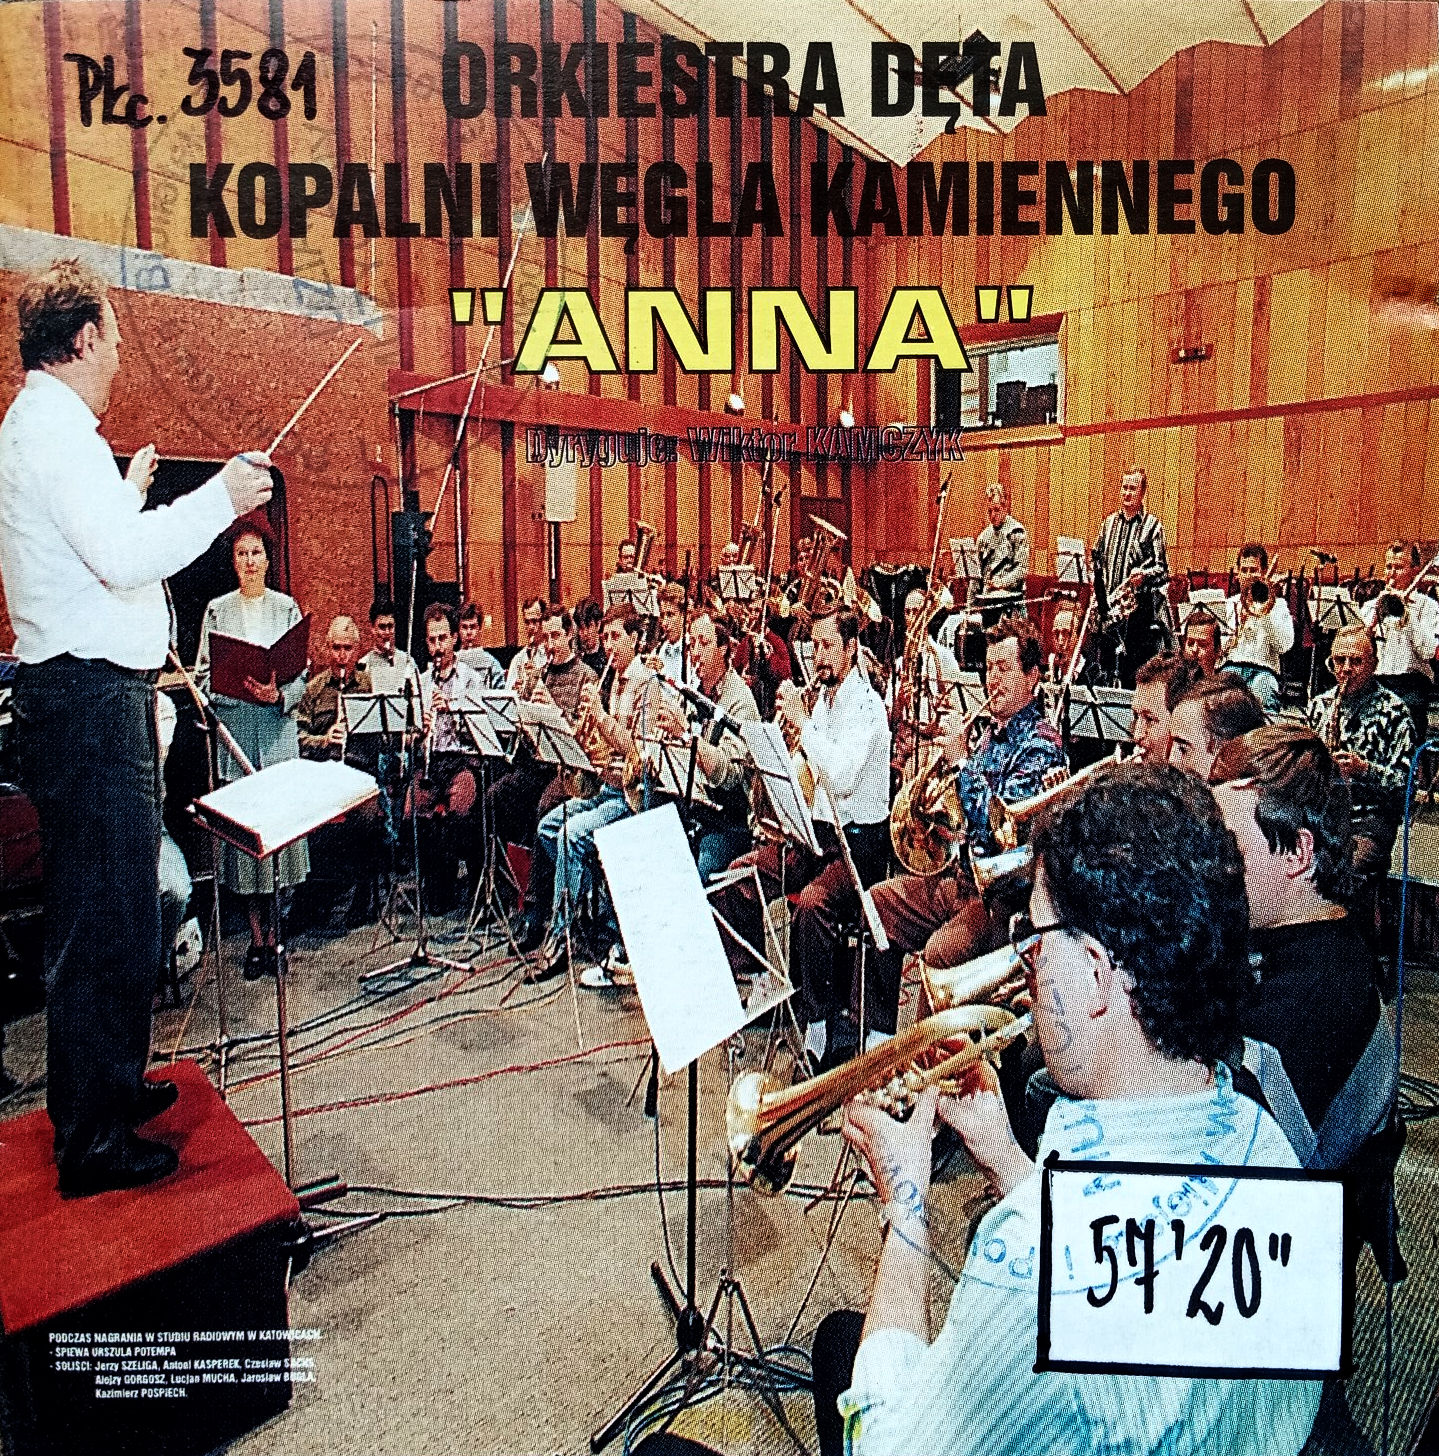 ORKIESTRA DĘTA KWK ANNA - Orkiestra Dęta KWK Anna